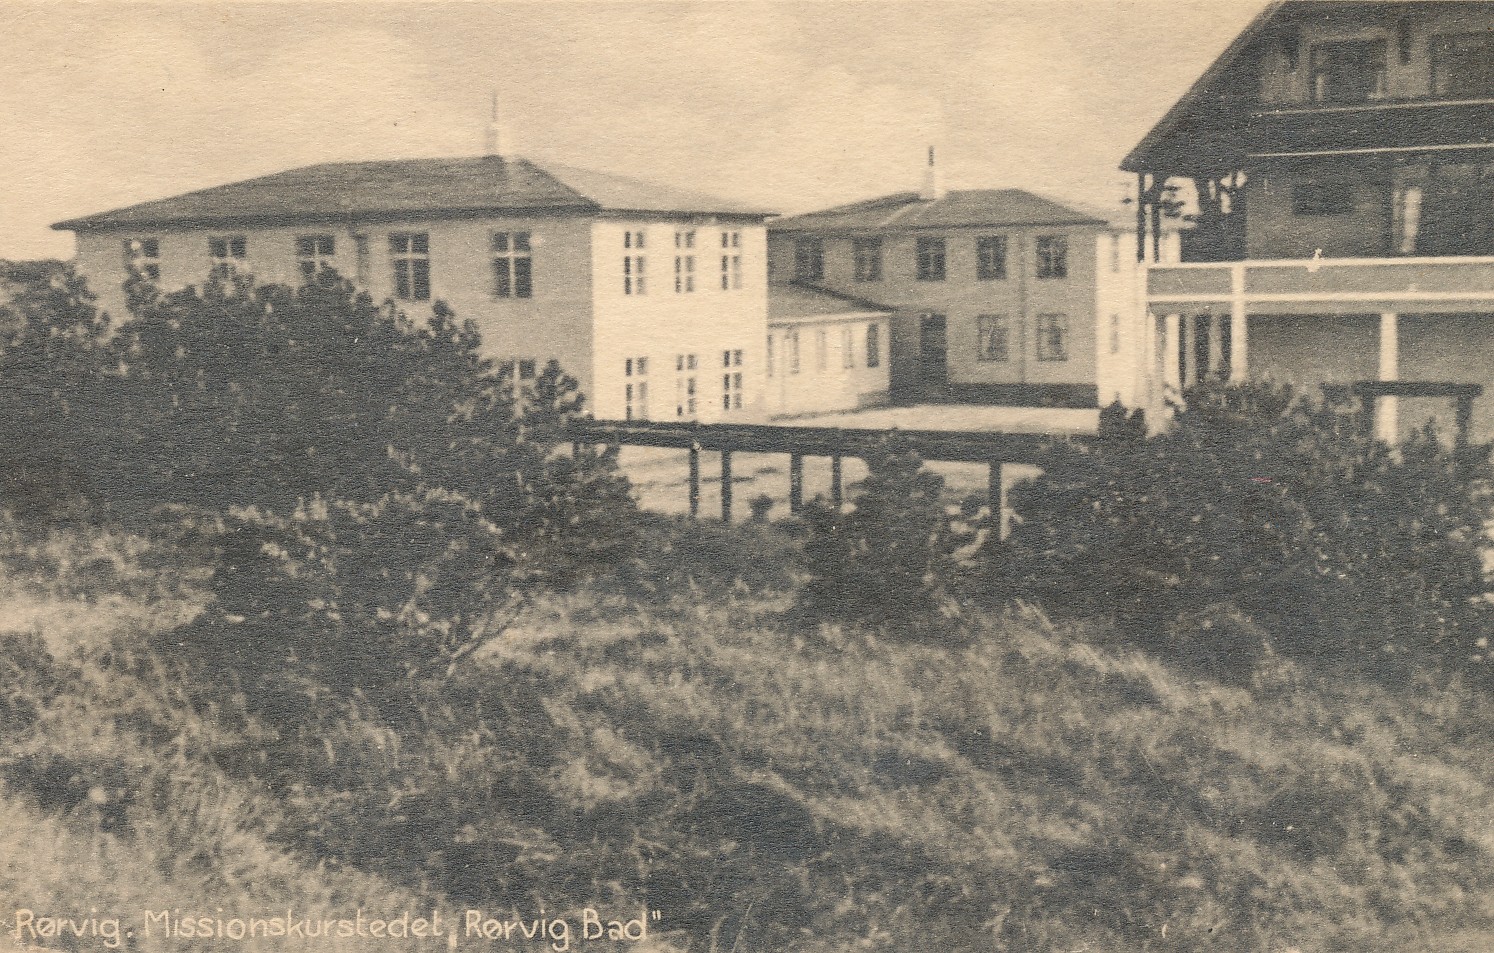 Missionskurstedet, tilbygninger  - ca. 1935   (B95162)